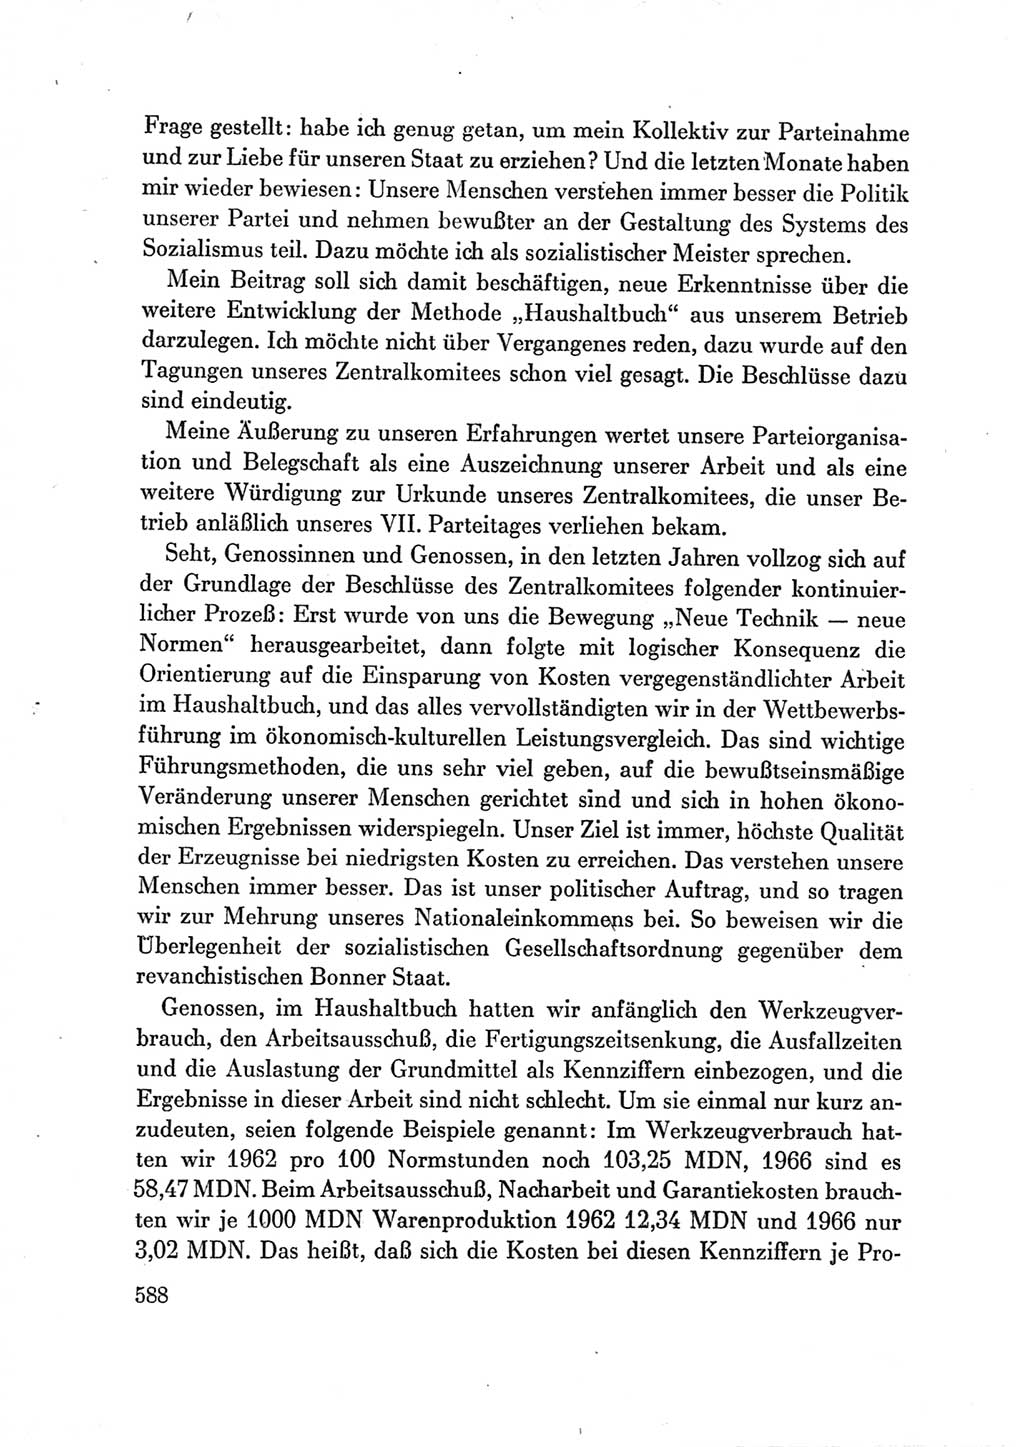 Protokoll der Verhandlungen des Ⅶ. Parteitages der Sozialistischen Einheitspartei Deutschlands (SED) [Deutsche Demokratische Republik (DDR)] 1967, Band Ⅲ, Seite 588 (Prot. Verh. Ⅶ. PT SED DDR 1967, Bd. Ⅲ, S. 588)